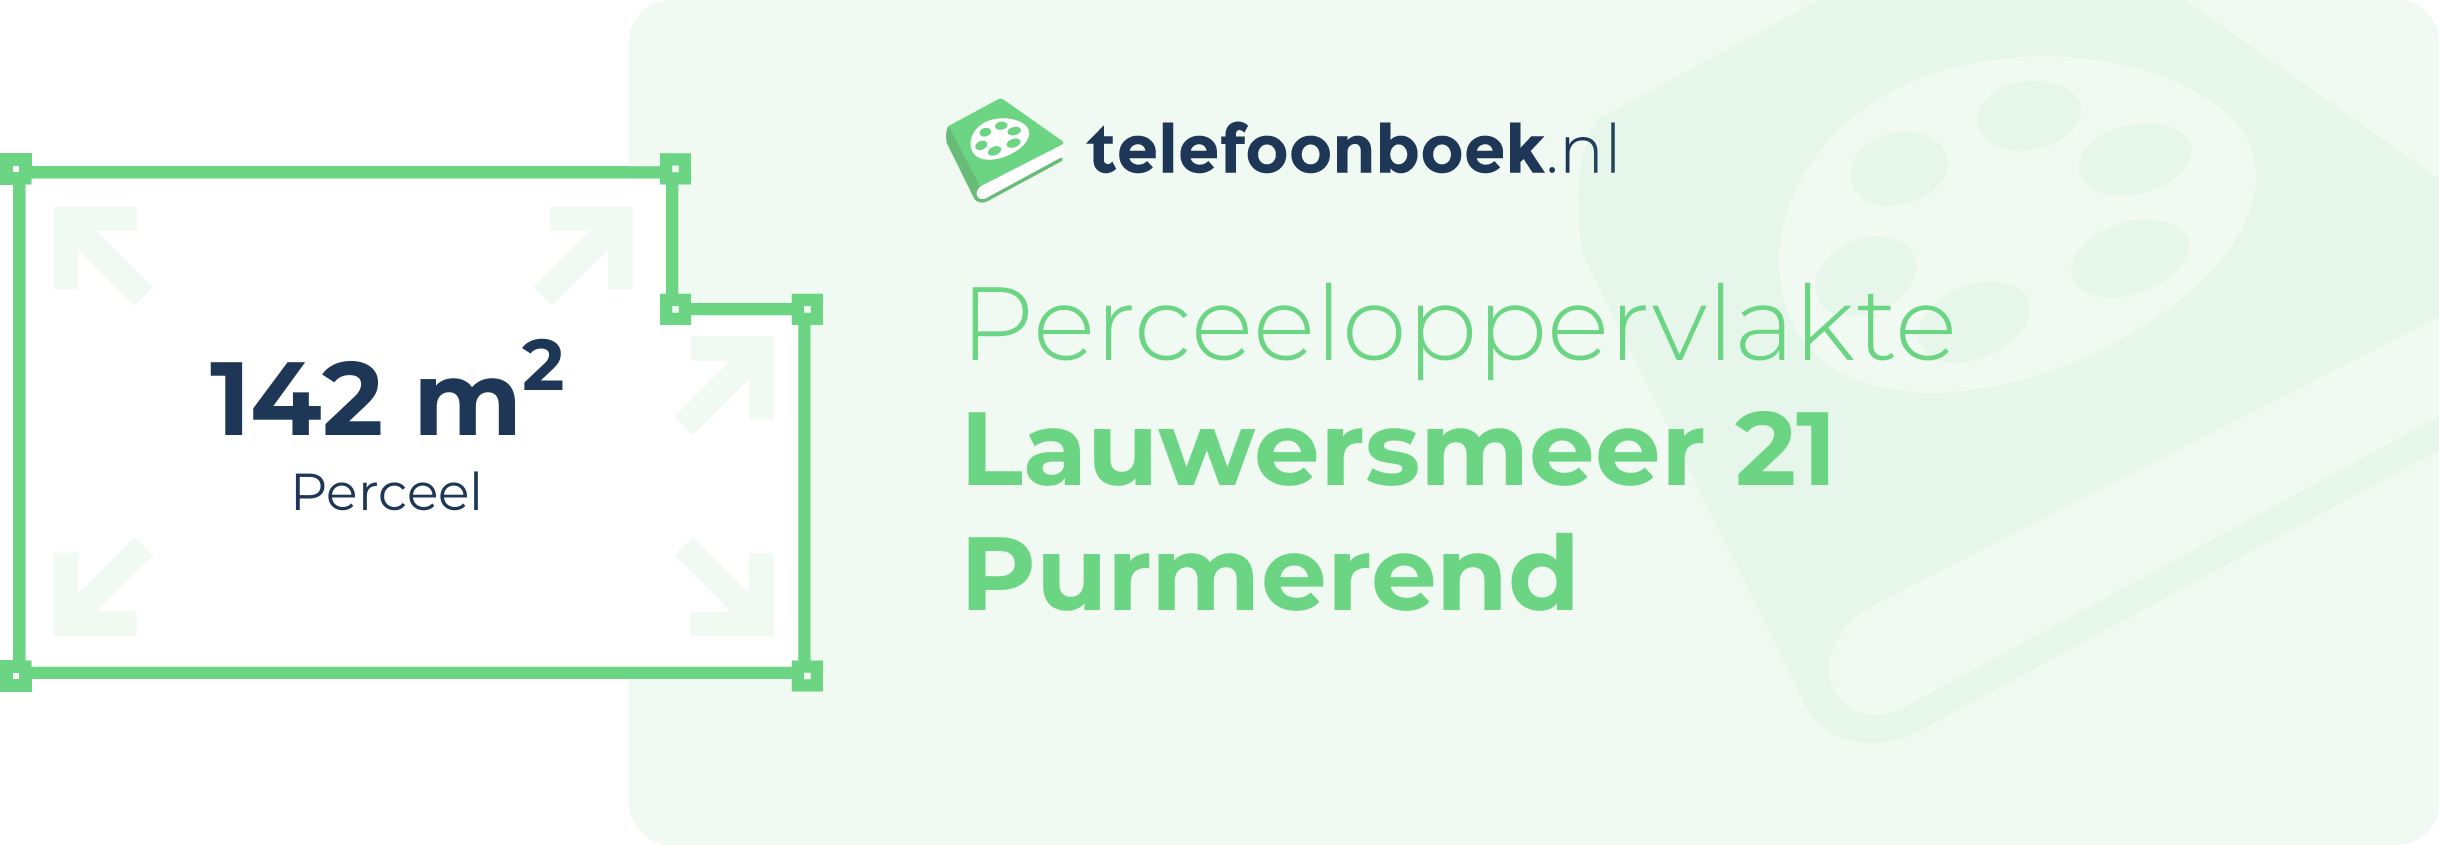 Perceeloppervlakte Lauwersmeer 21 Purmerend